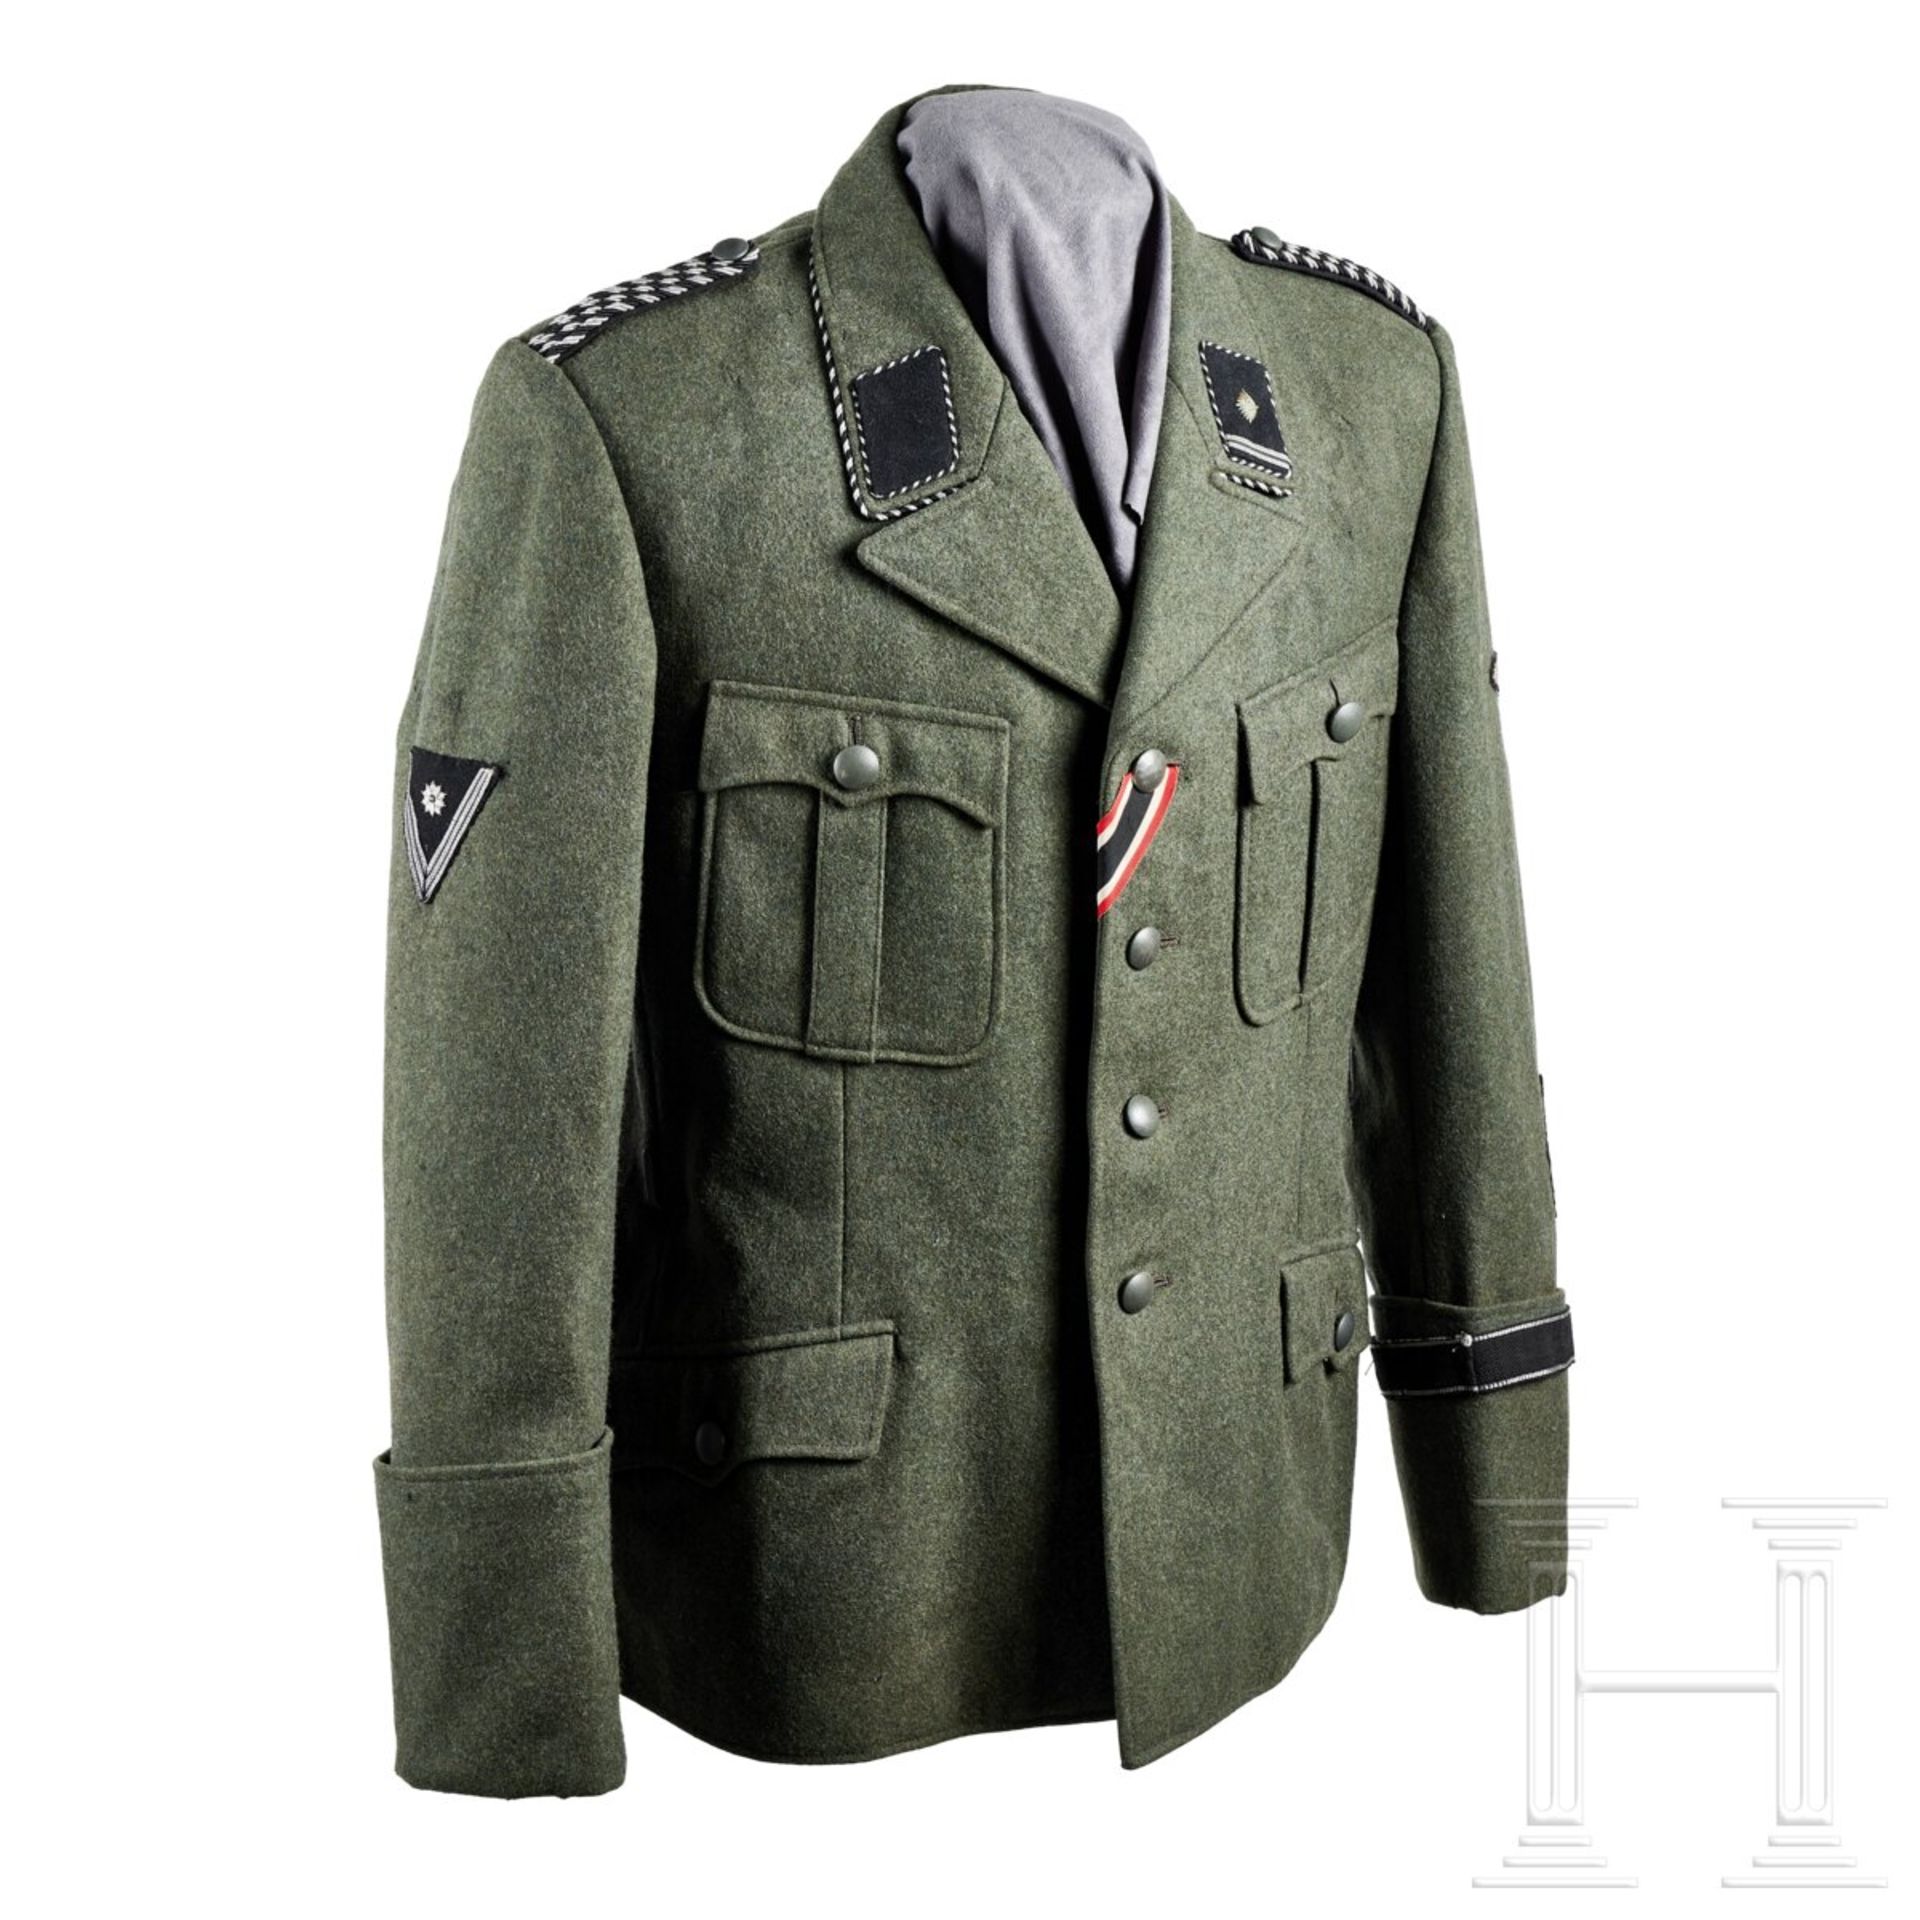 A 1939 Field Grey Service Tunic for a Scharführer of the SD - Bild 2 aus 14